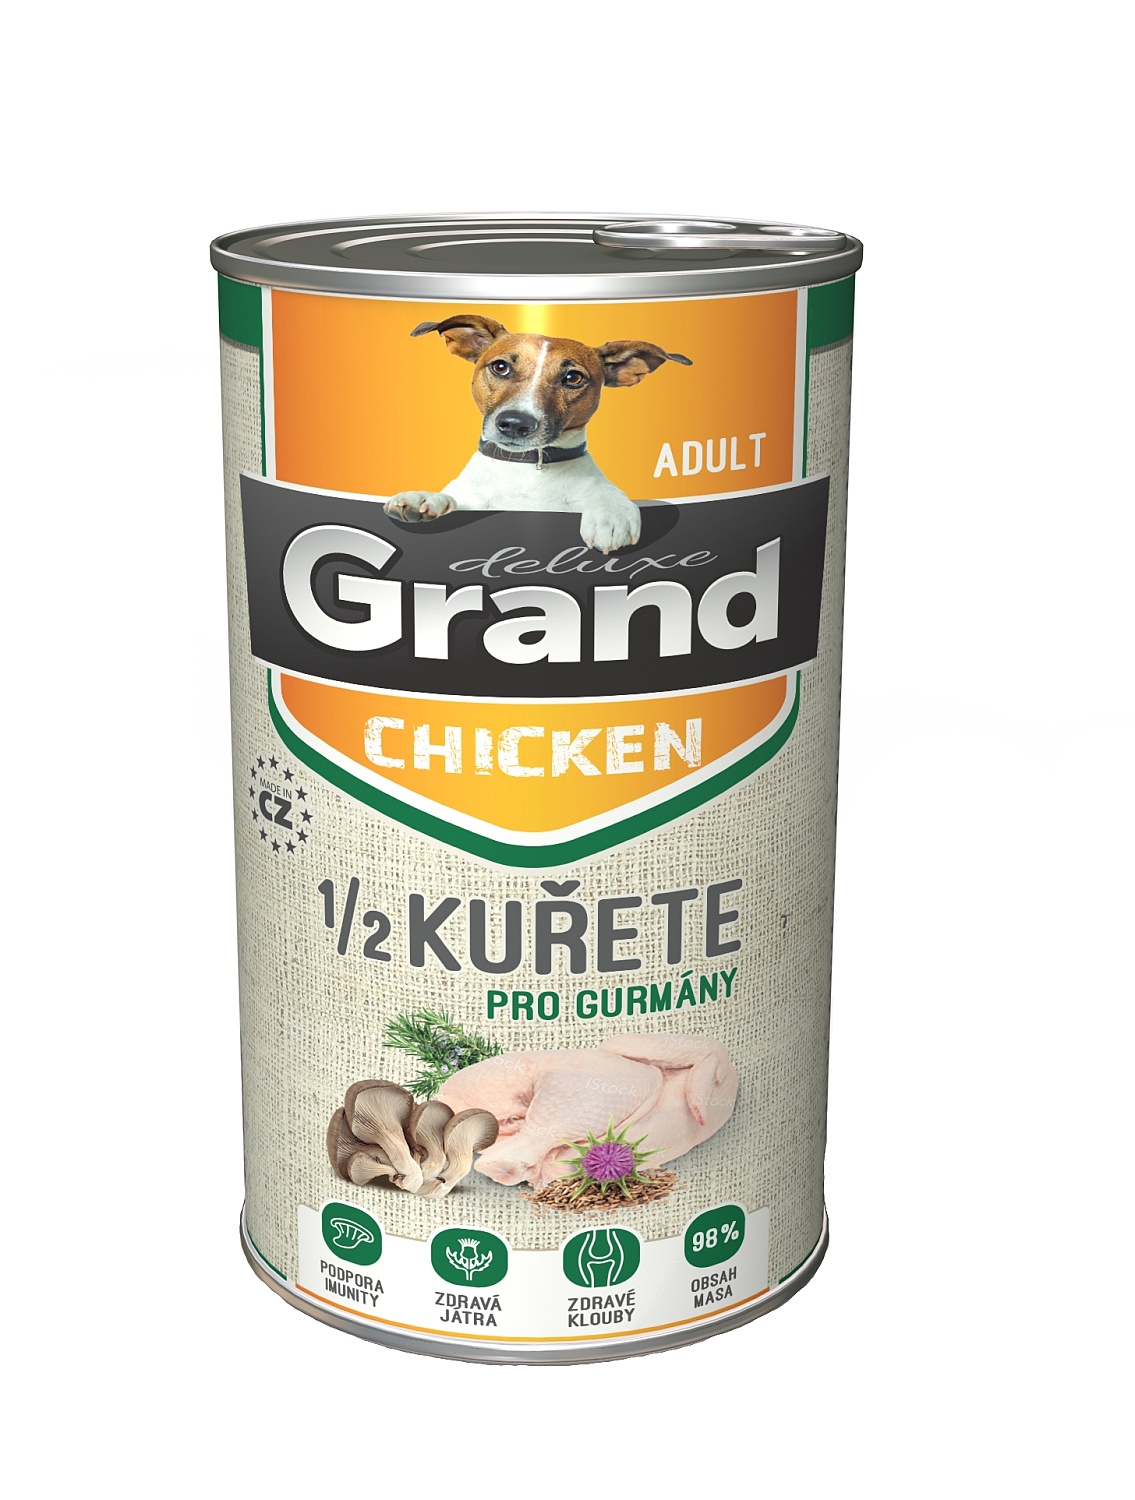 Grand deluxe Dog Adult s 1/2 kuřete, konzerva1300 g